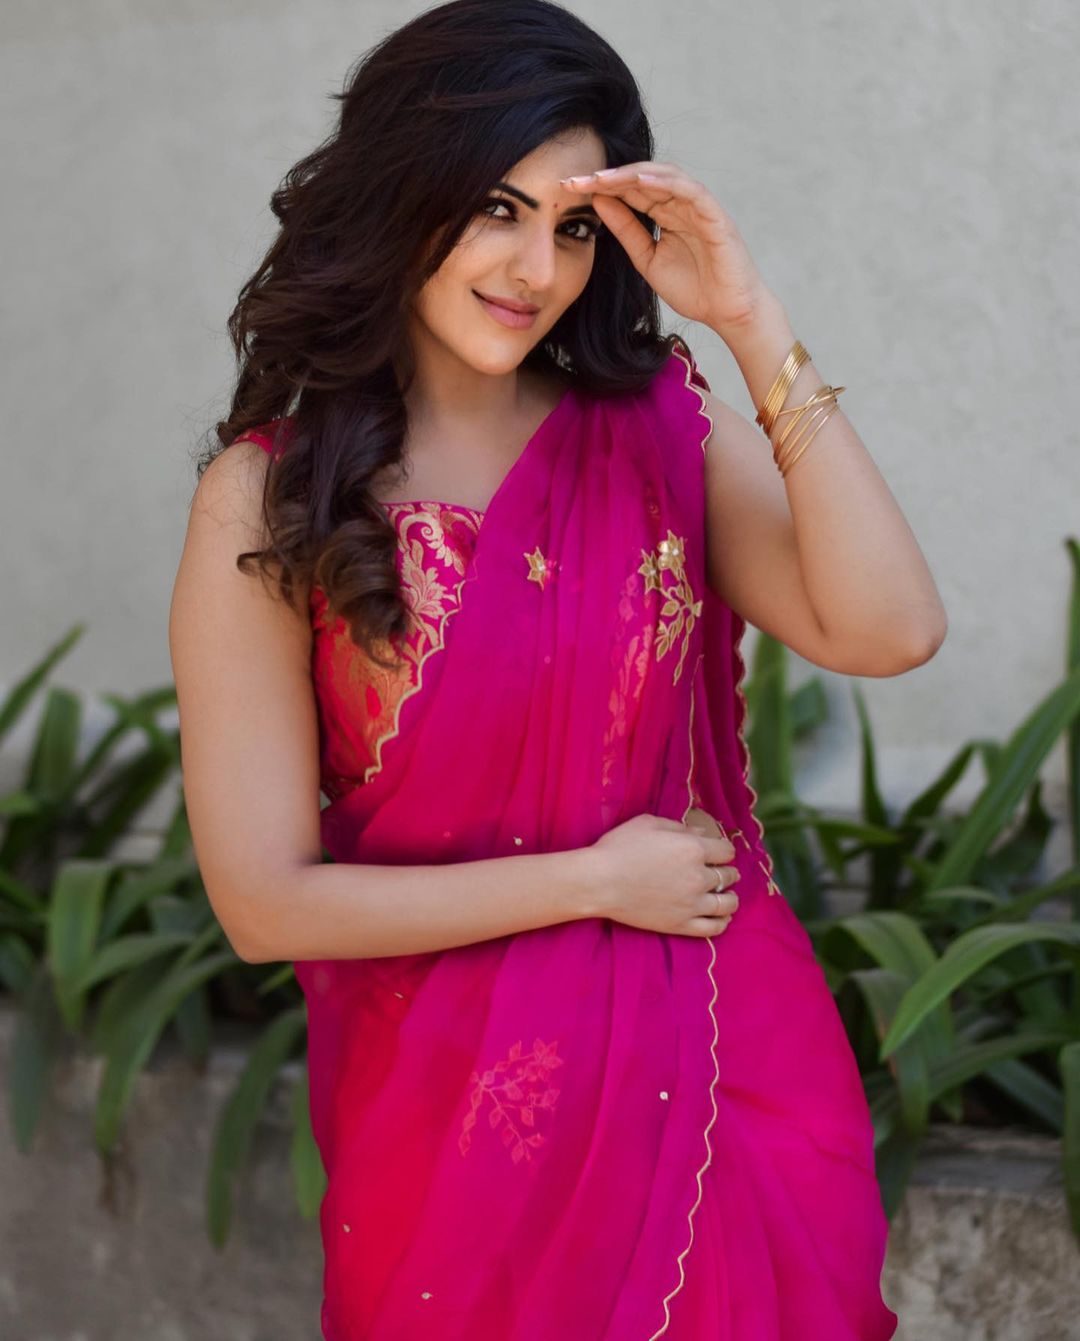 Athulya ravi hot posing in pink traditional half saree getting viral